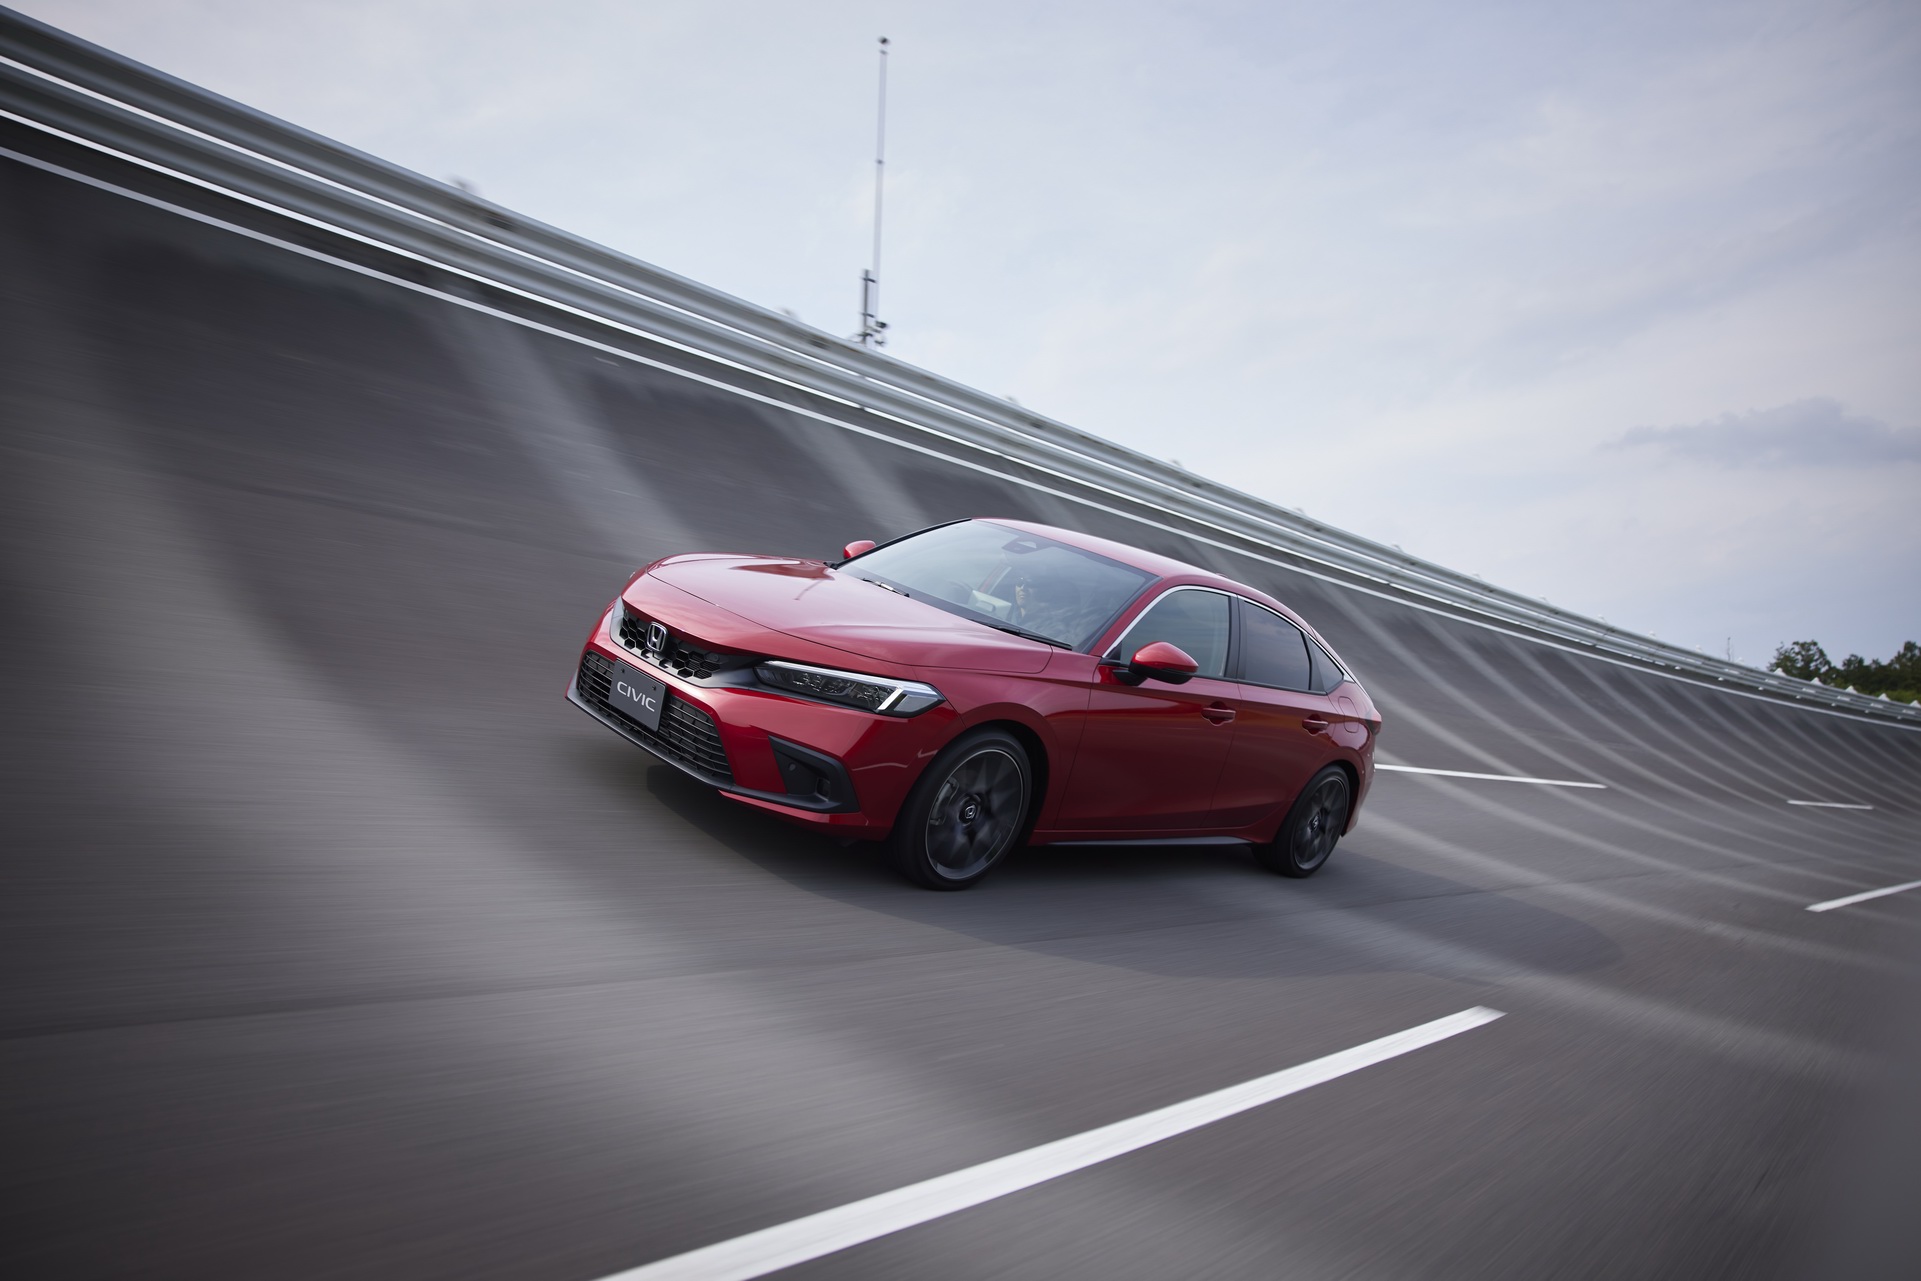 2022 Honda Civic Hatchback tanıtıldı: Avrupa'ya sadece hibrit motorla gelecek